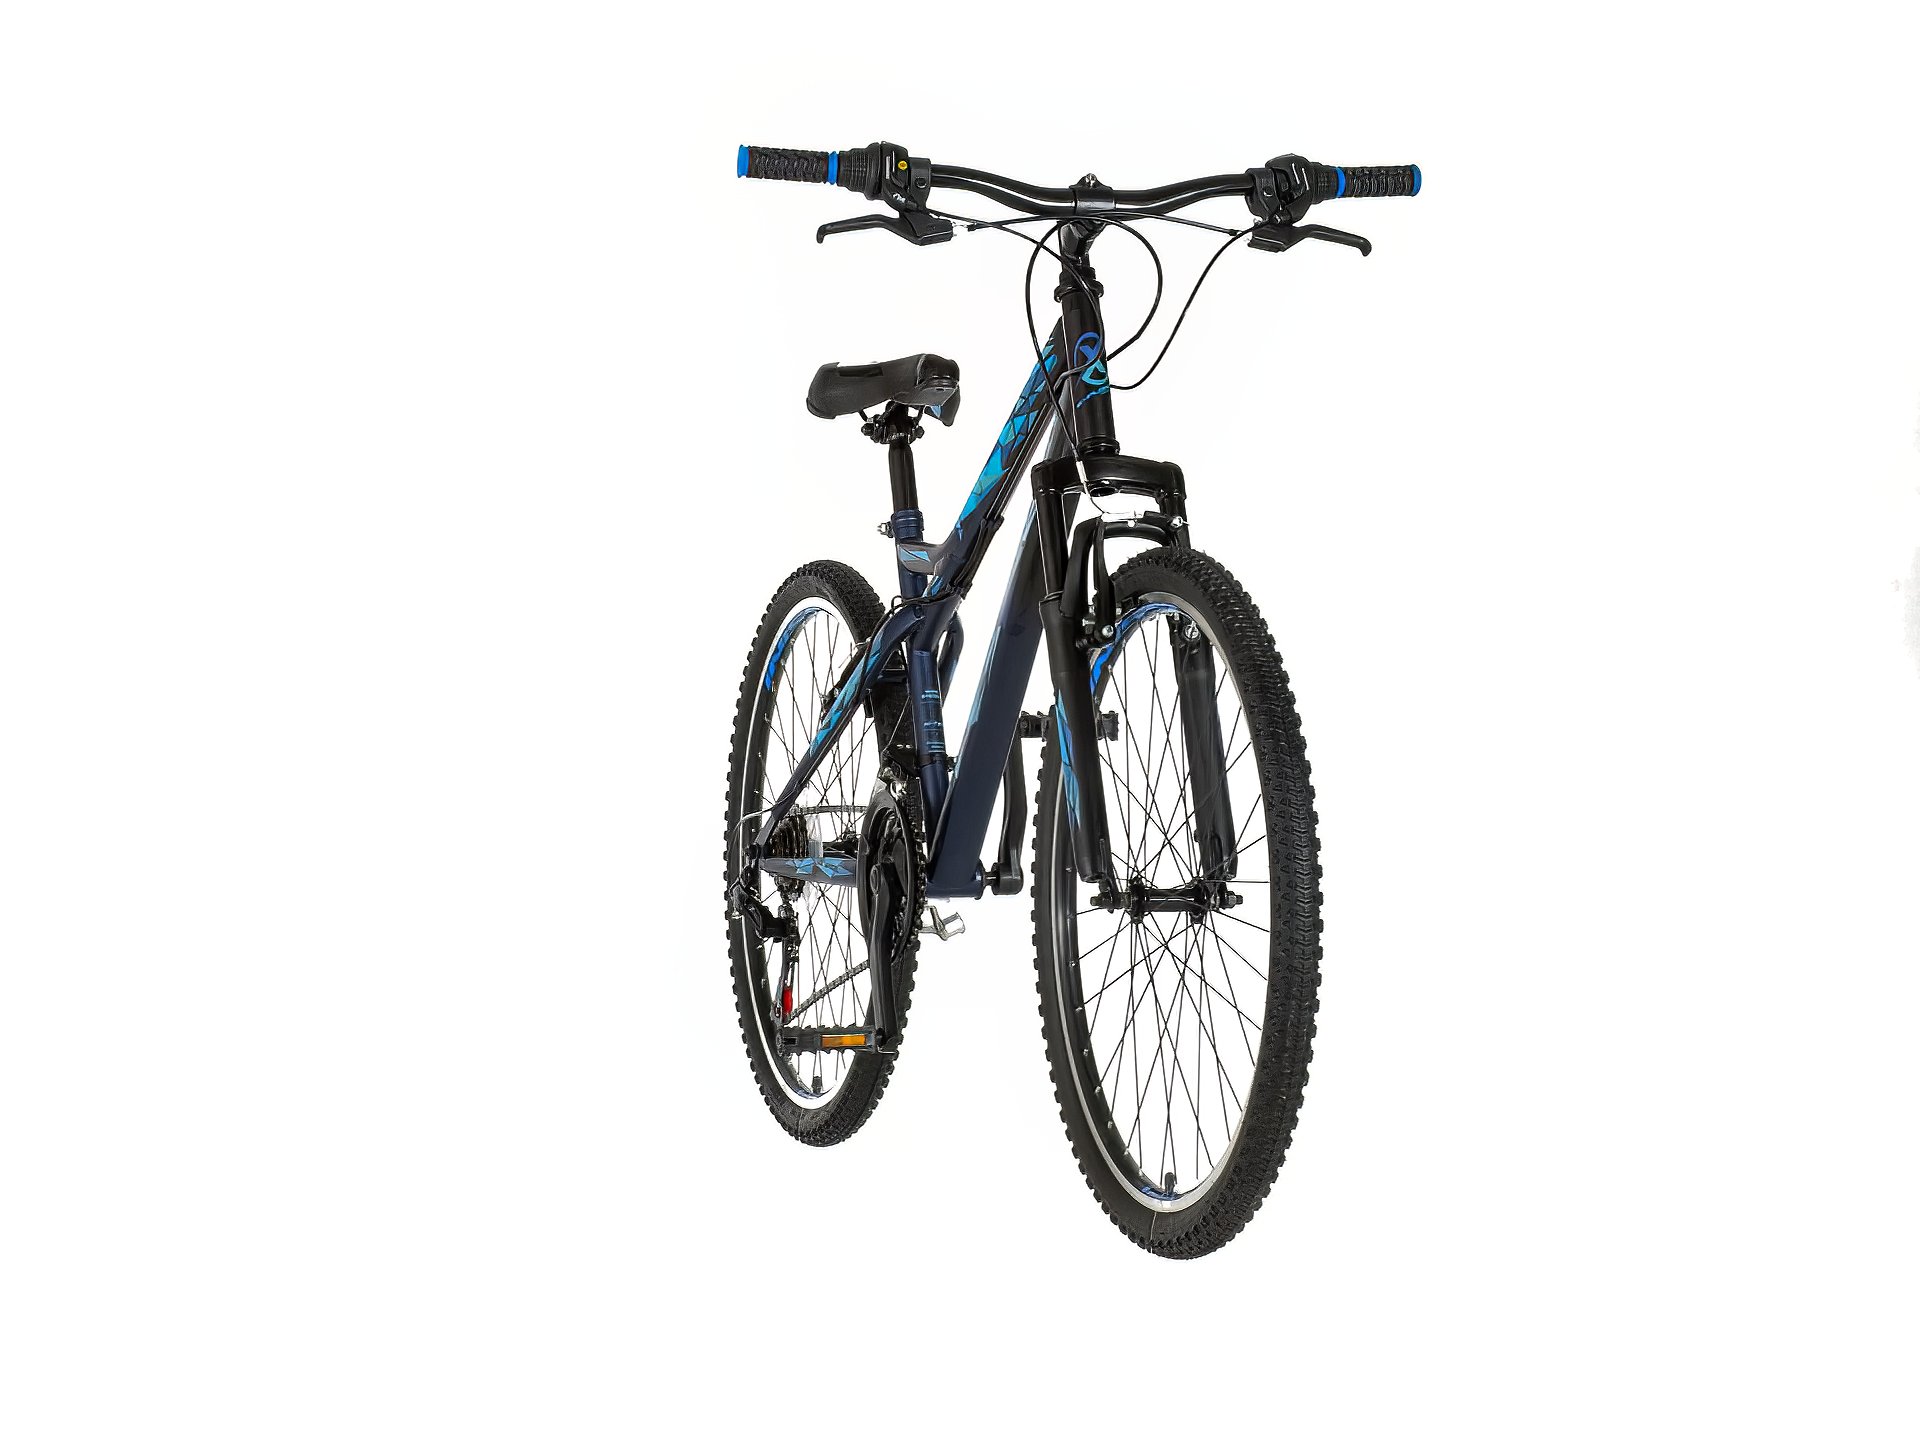 Explorer vortex mtb bicikla plavo crna-vor263am